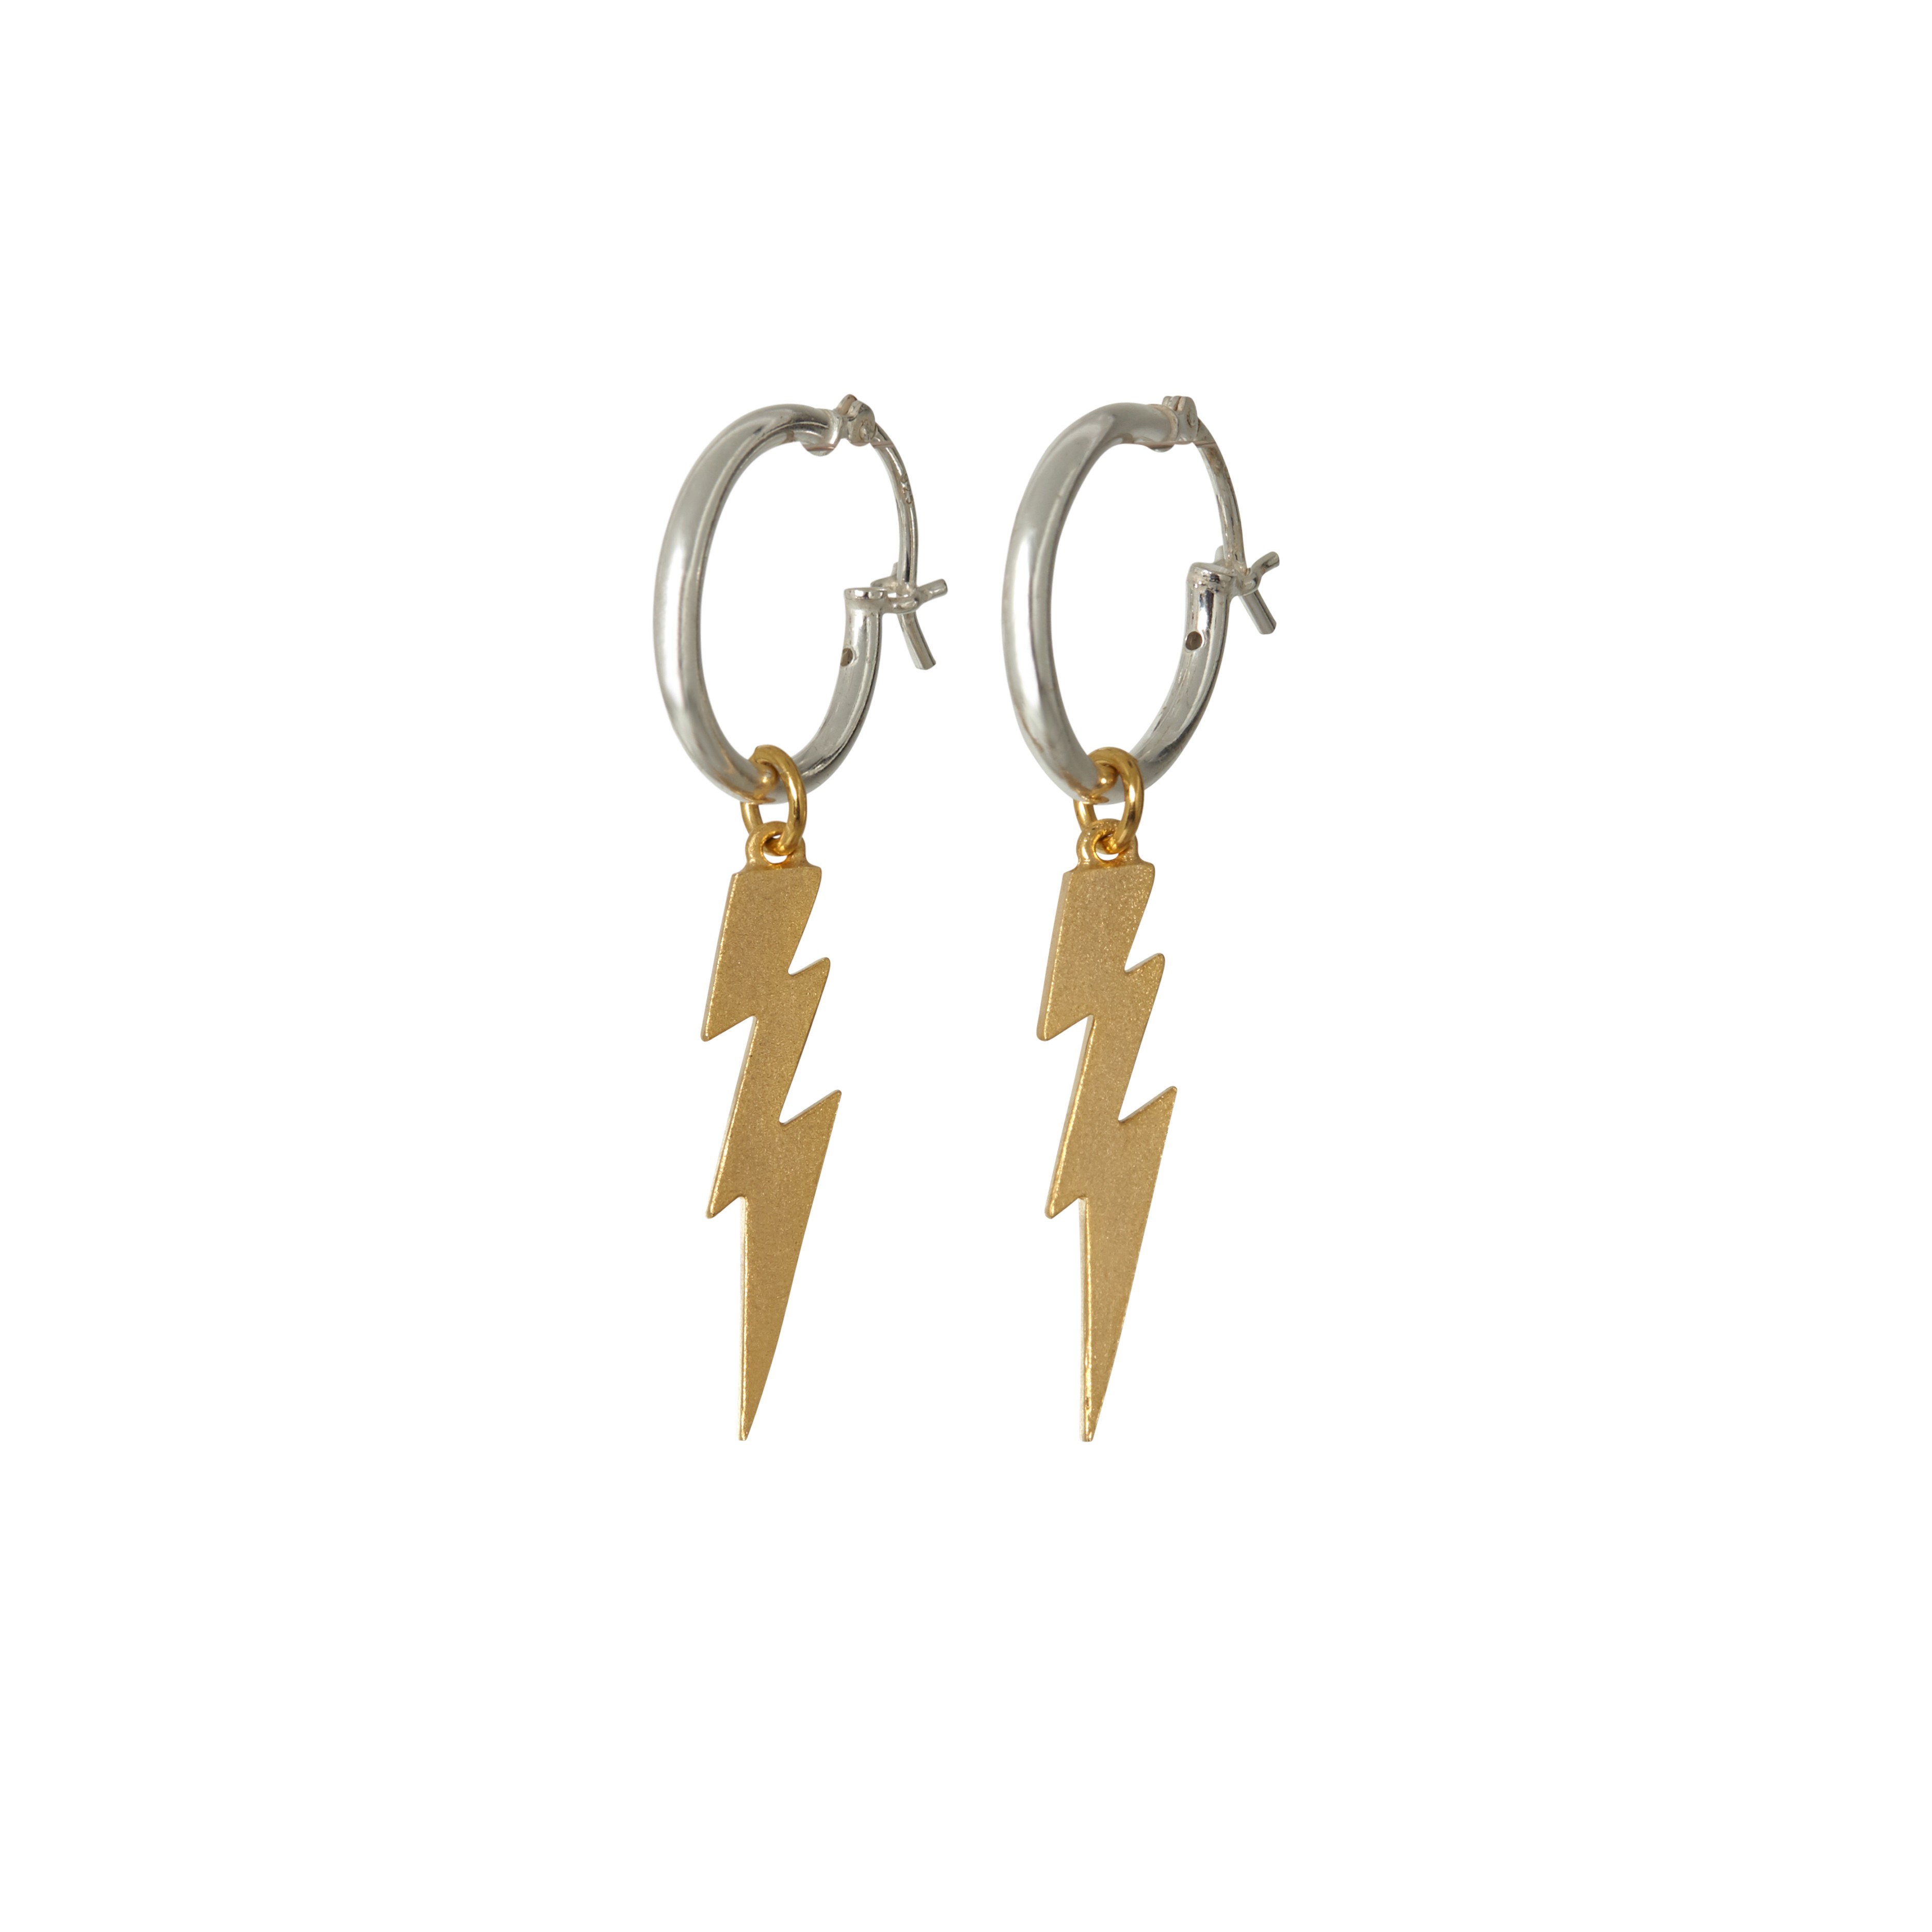 Lightning Bolt earrings